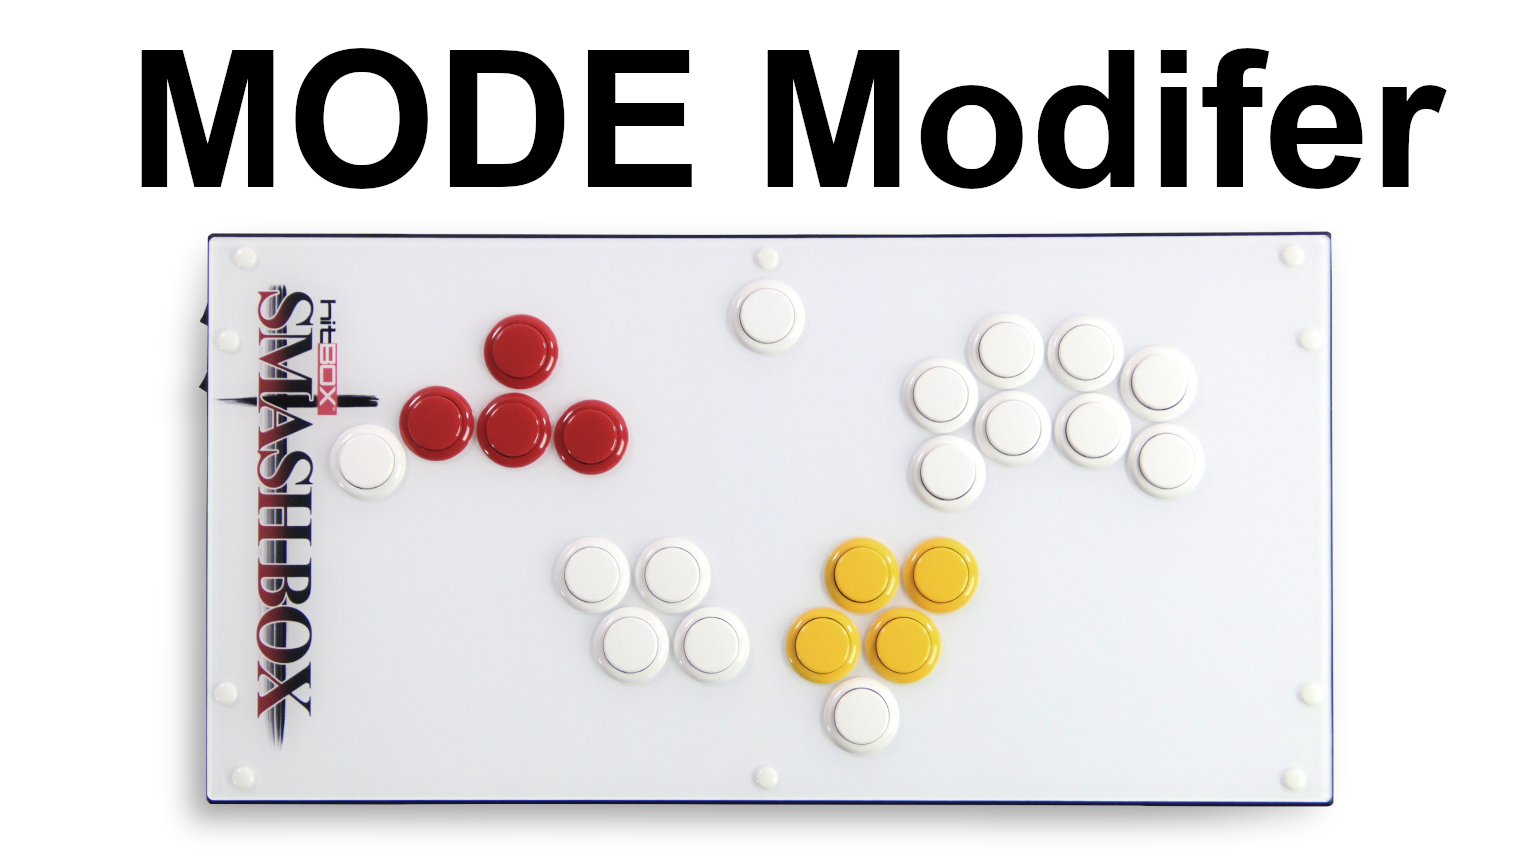 MODE Modifier on Smash Box